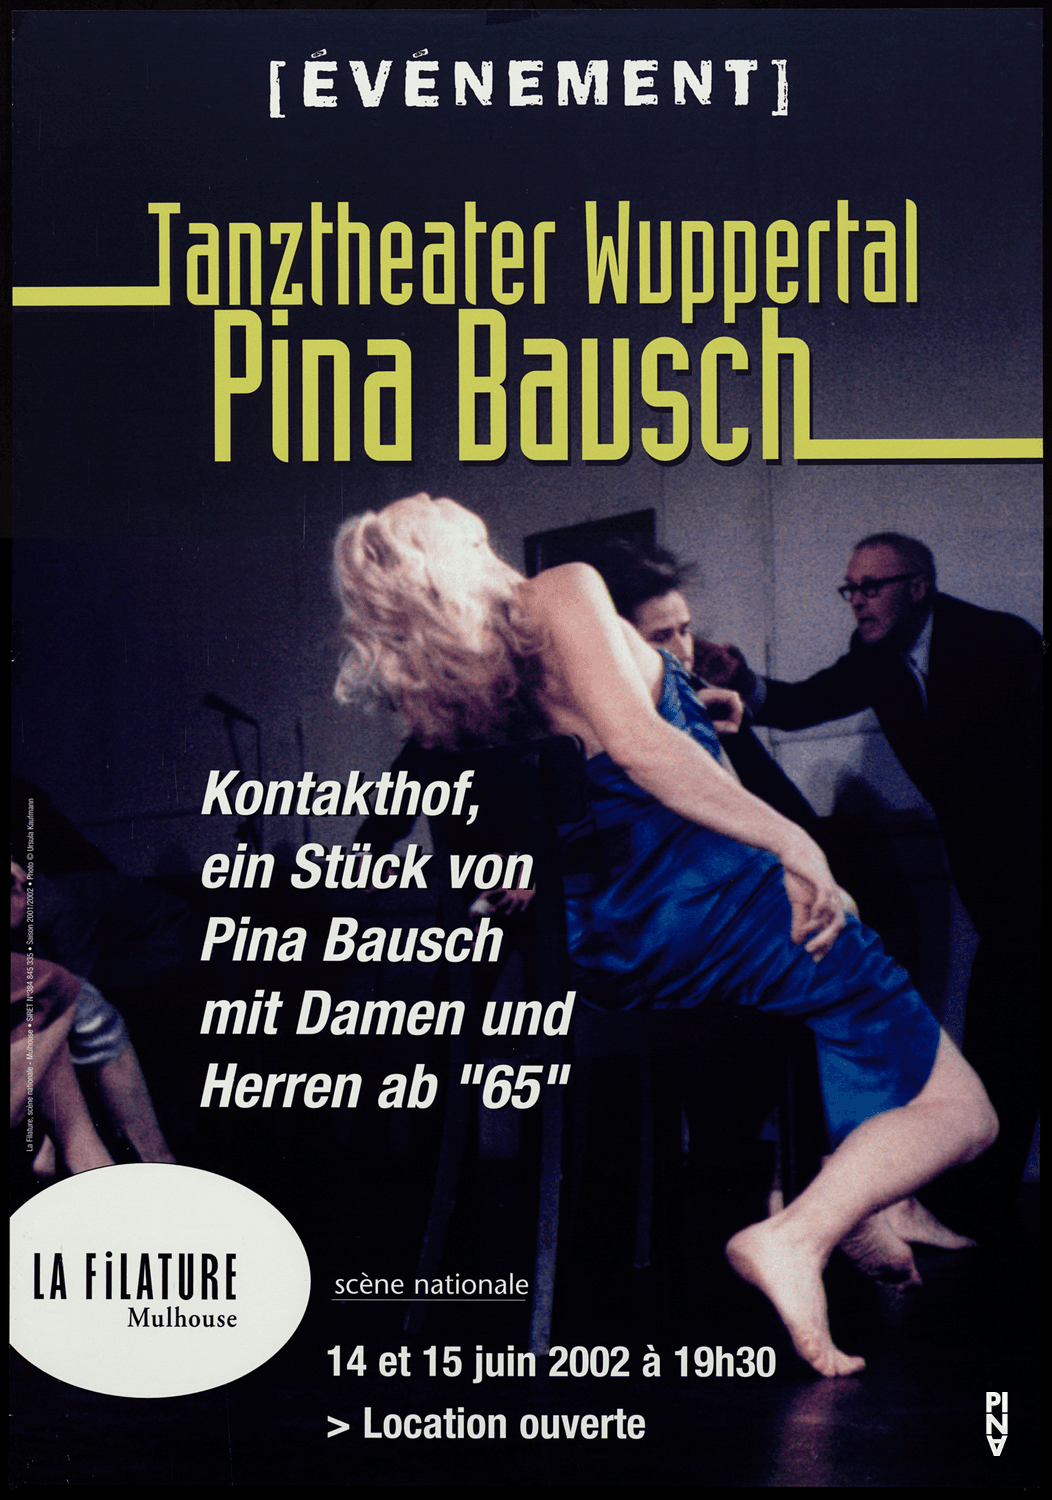 Poster: Ursula Kaufmann © Pina Bausch Foundation, Photo: Ursula Kaufmann